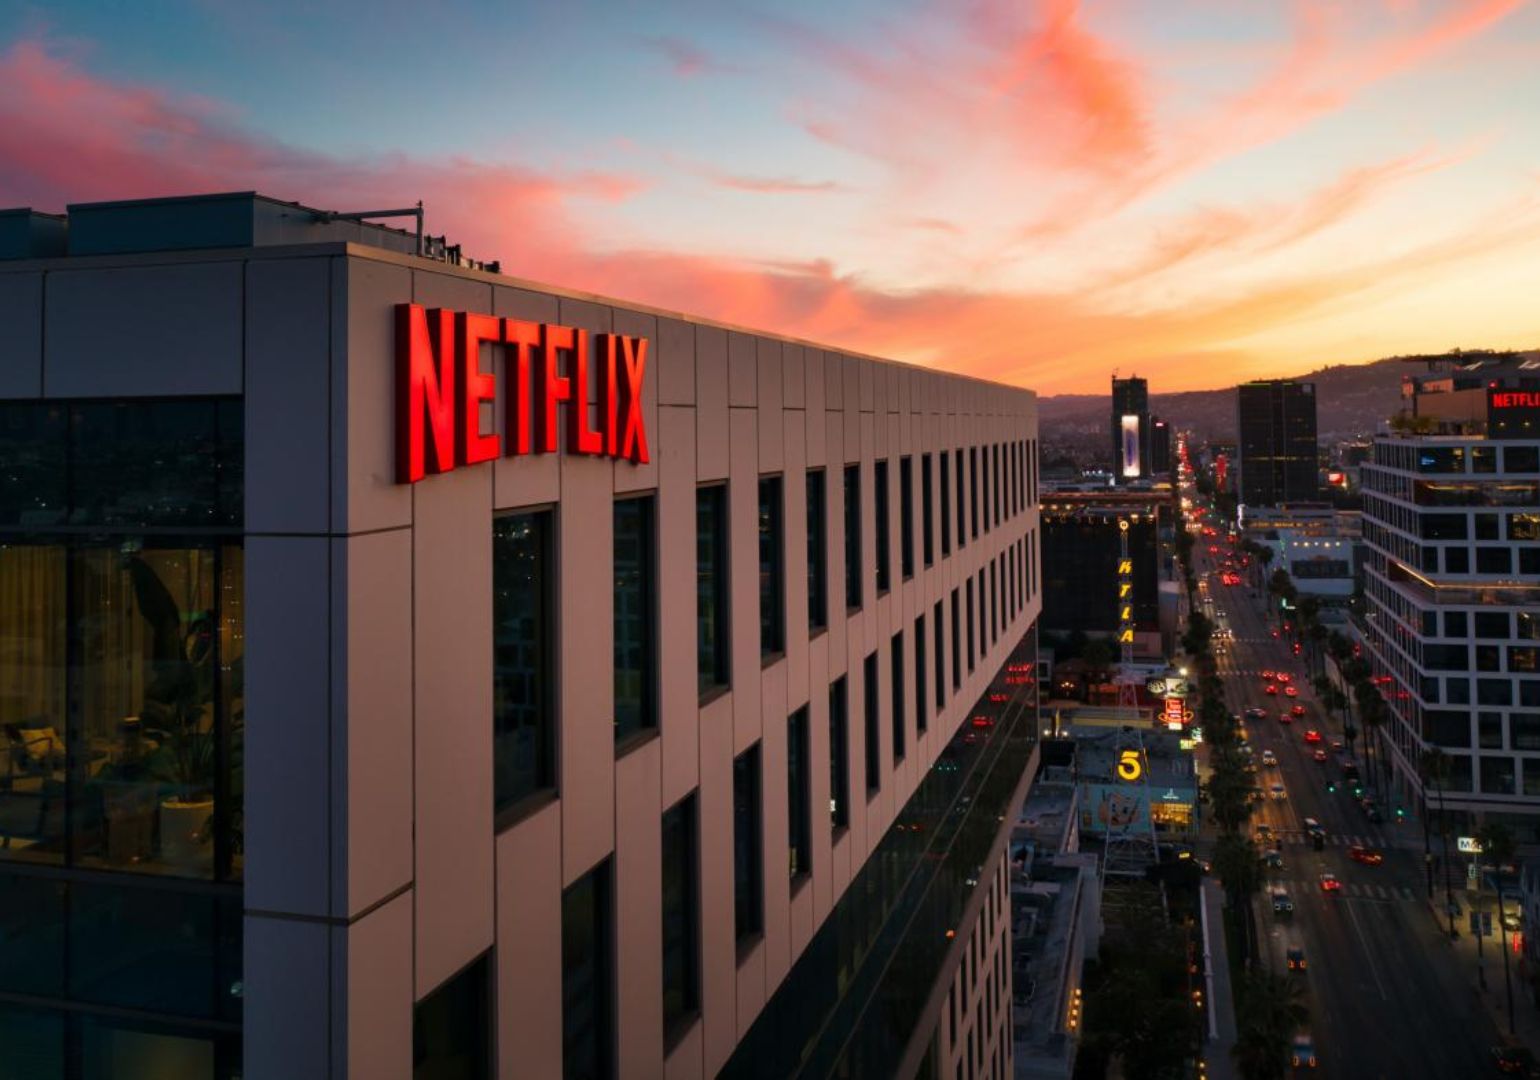 Netflixი 2025 წლიდან მულტიფუნქციურ სავაჭრო პუნქტებს გახსნის • Forbes